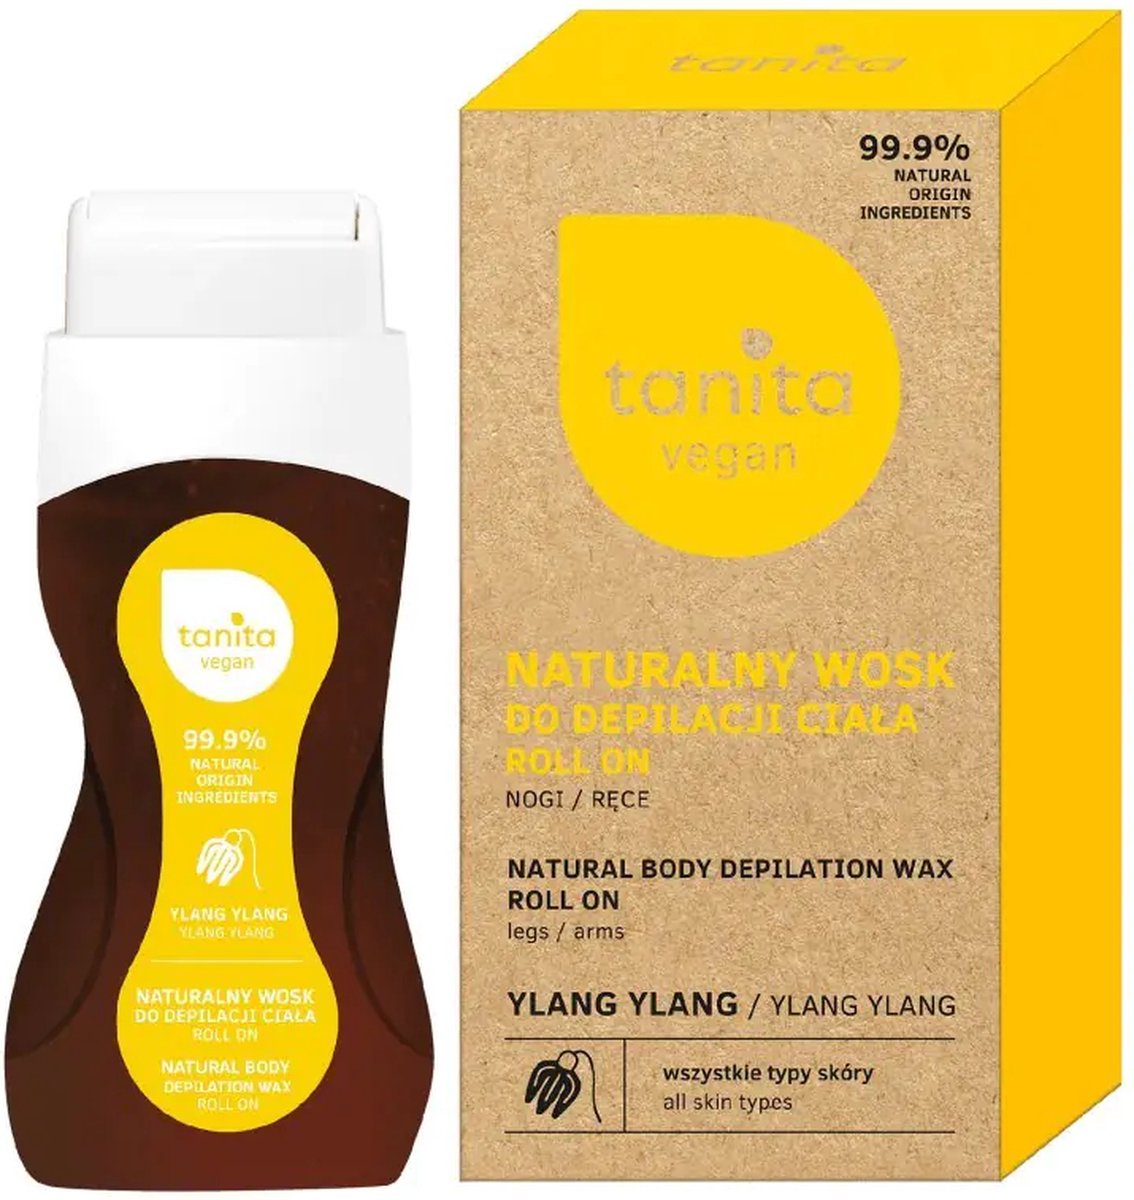 TANITA Vegan Natural Wax for depilation roll-on - Ylang Ylang 120ml